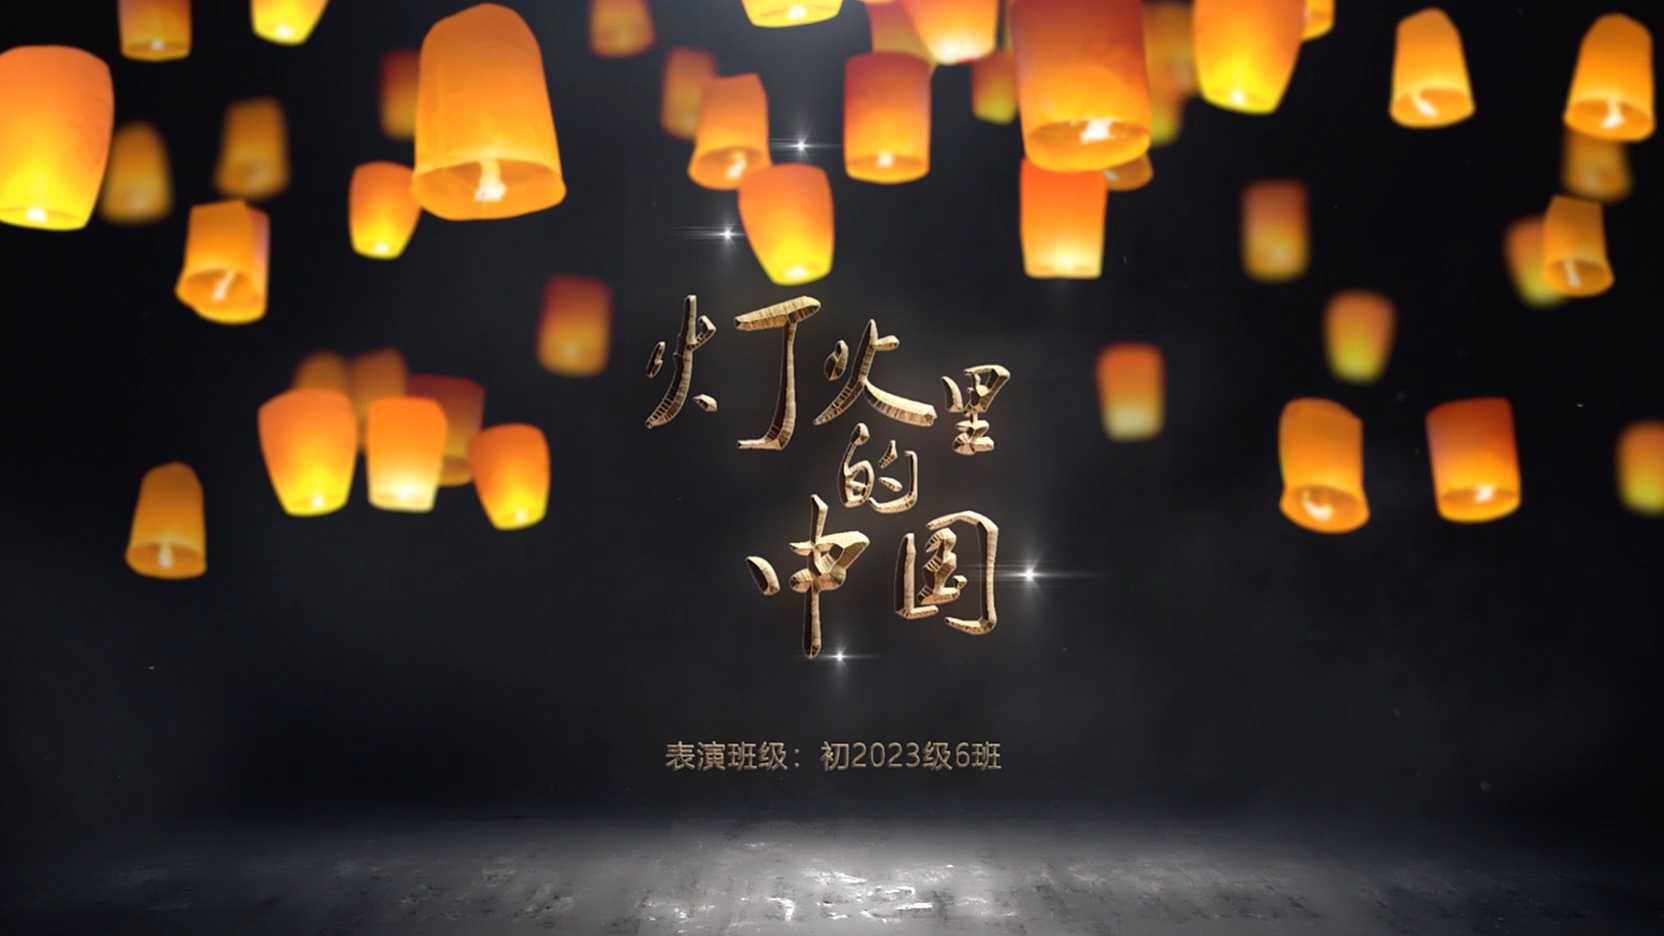 王莉 《 灯火里的中国》LED 大屏